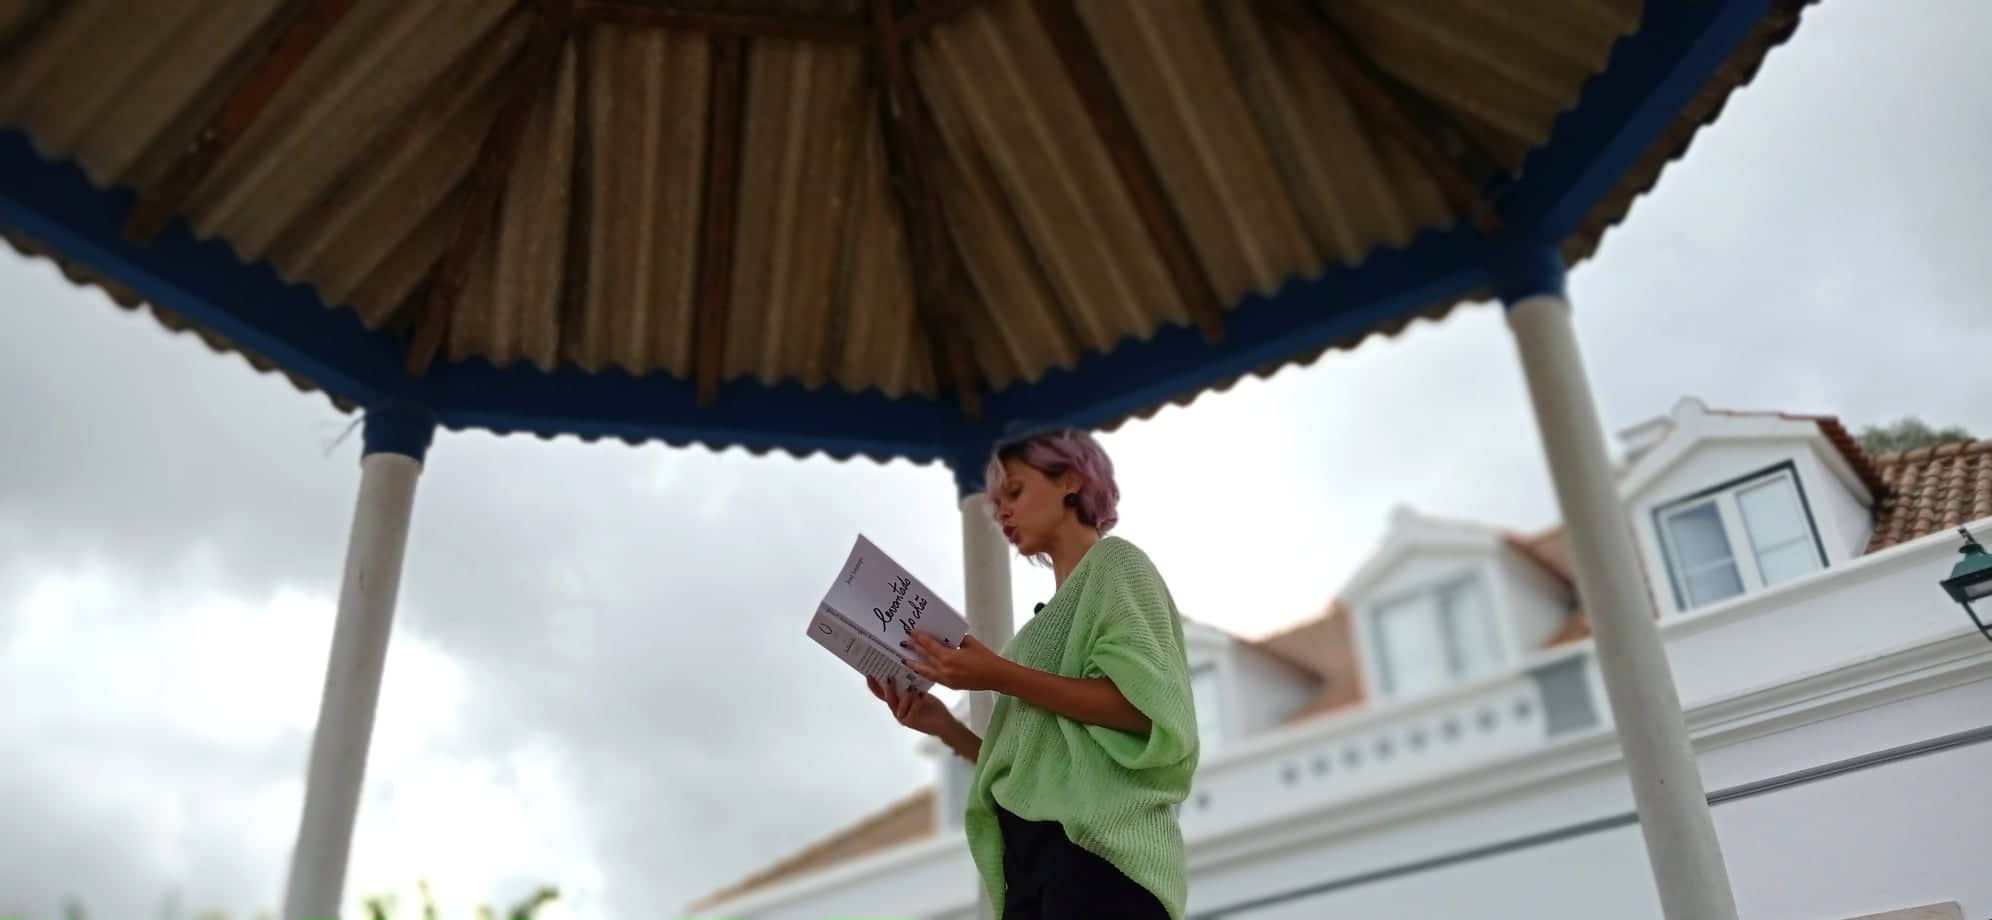 Helena Caldeira, Roteiro Literário Levantado do Chão, Montemor-o-Novo